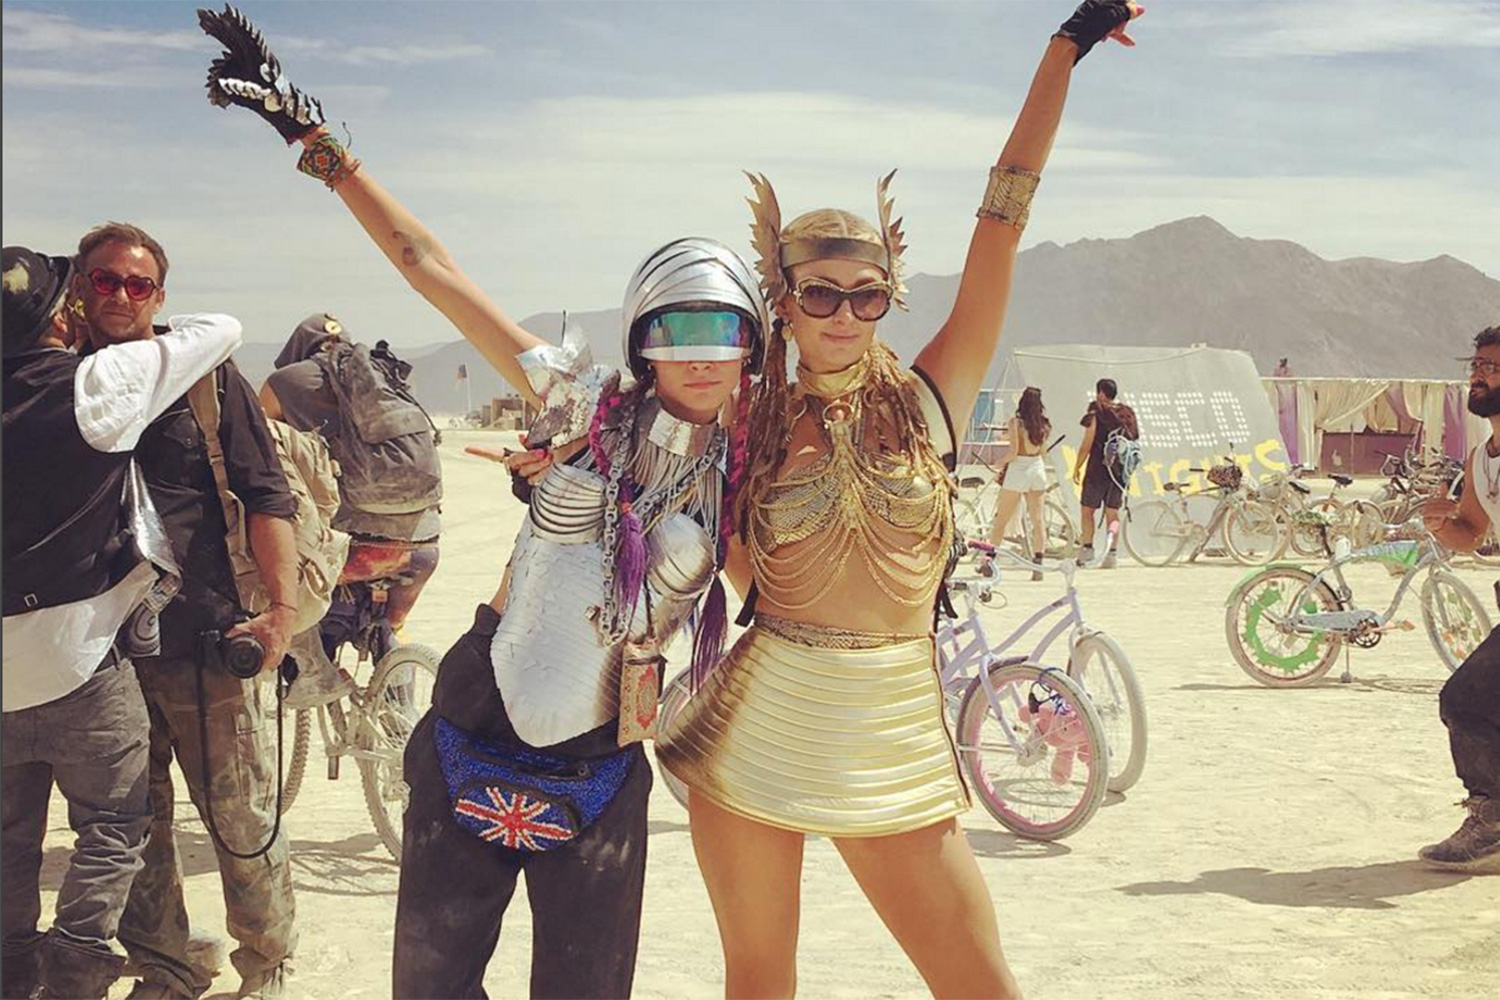 Atacan un campamento de Burning Man para ricos en protesta contra los 'parásitos sociales' del festival